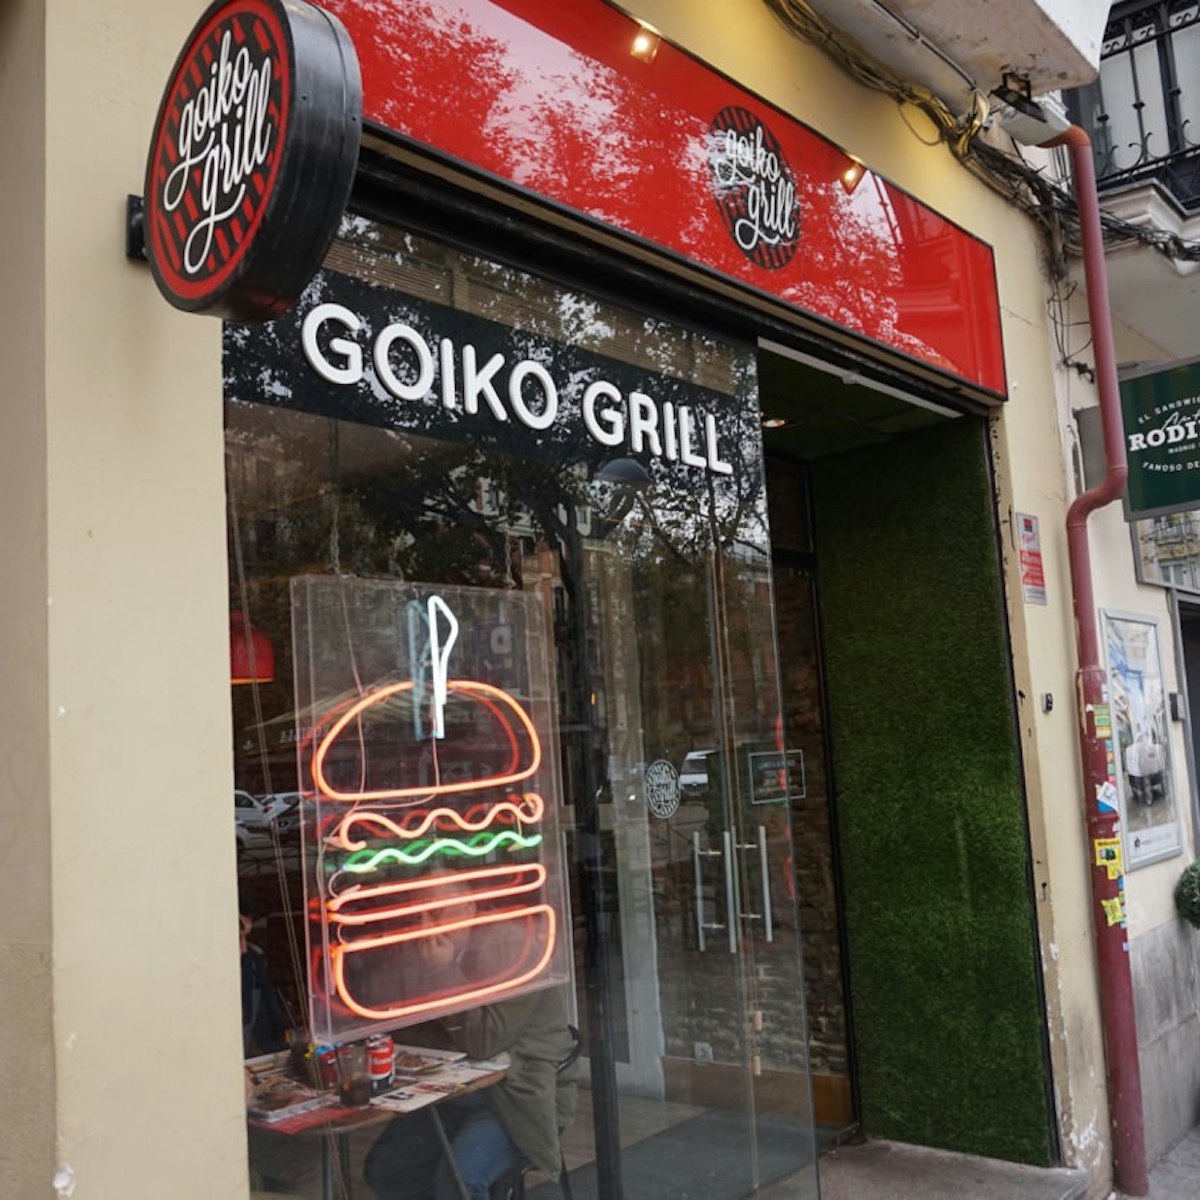 Goiko Grill's facade